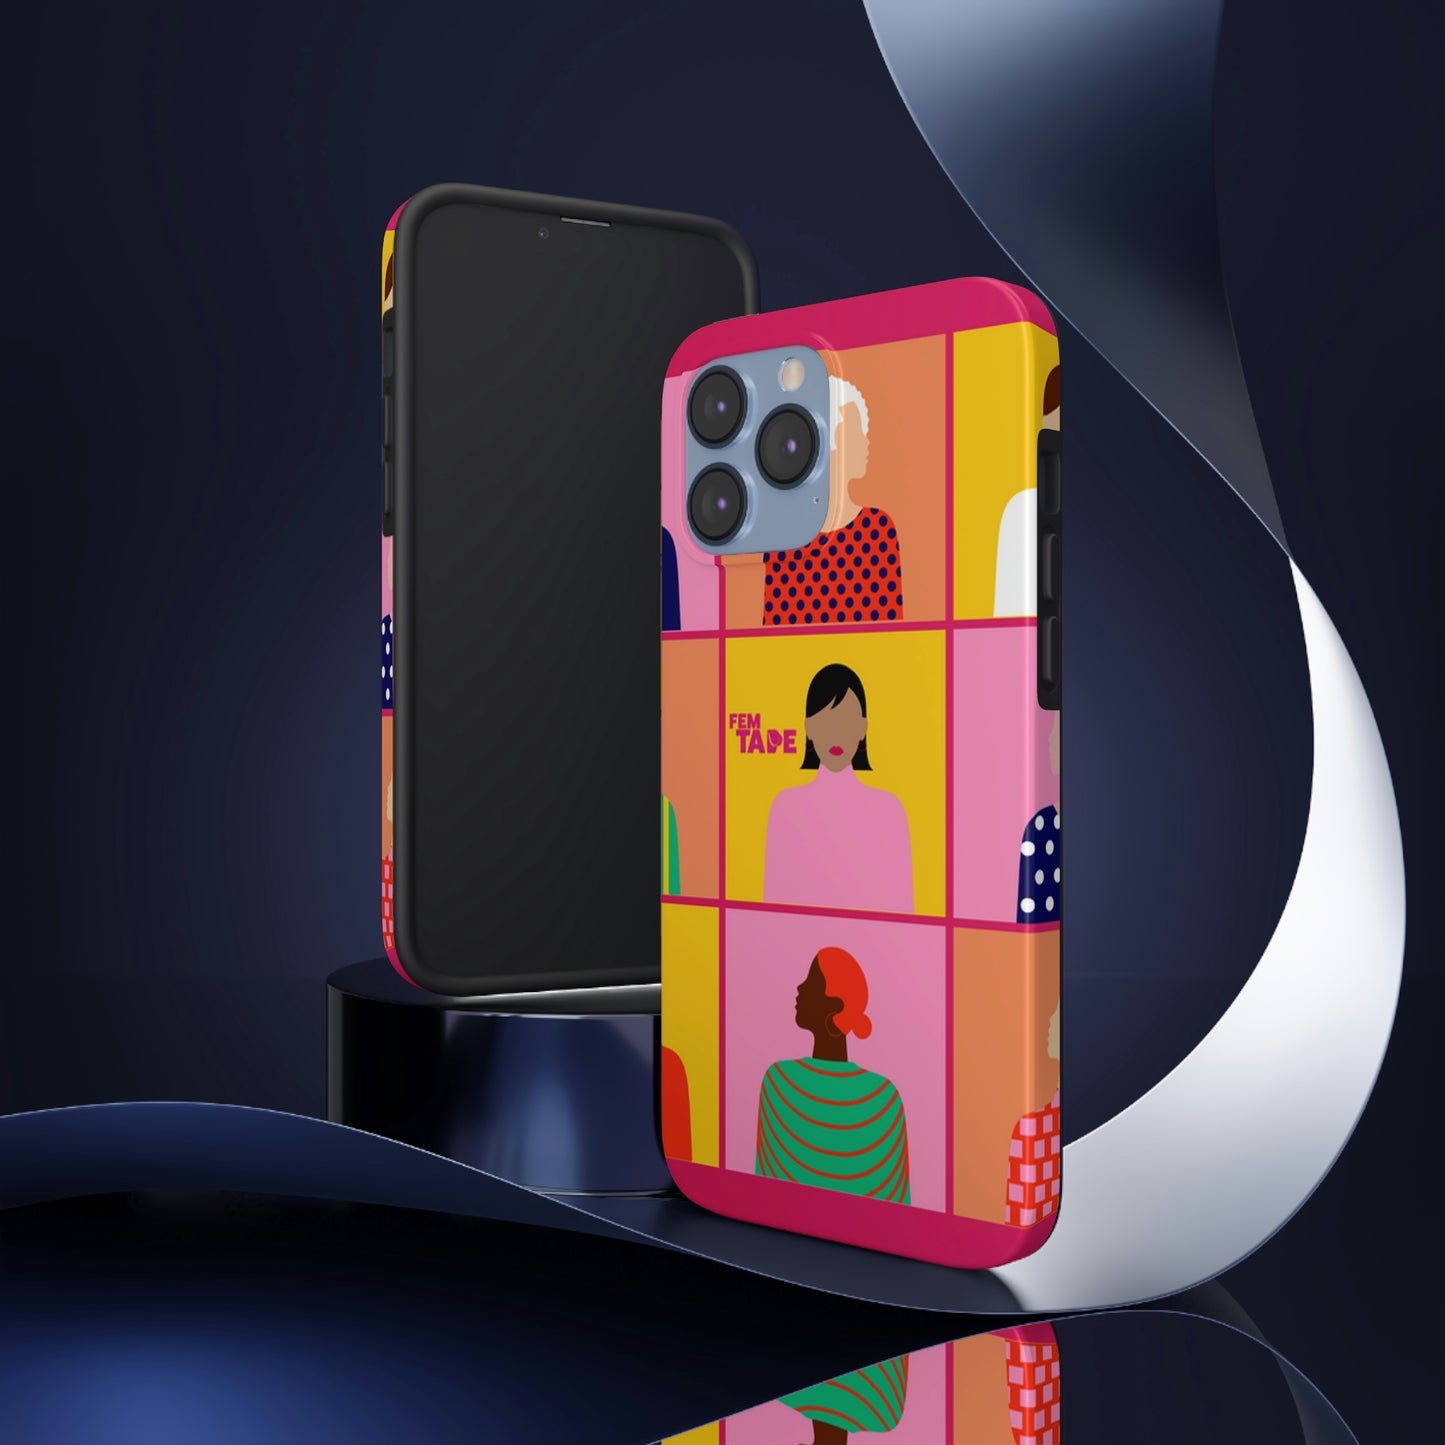 Funda para celular uso rudo Cubics Girly Avatars Promocionales FemTape